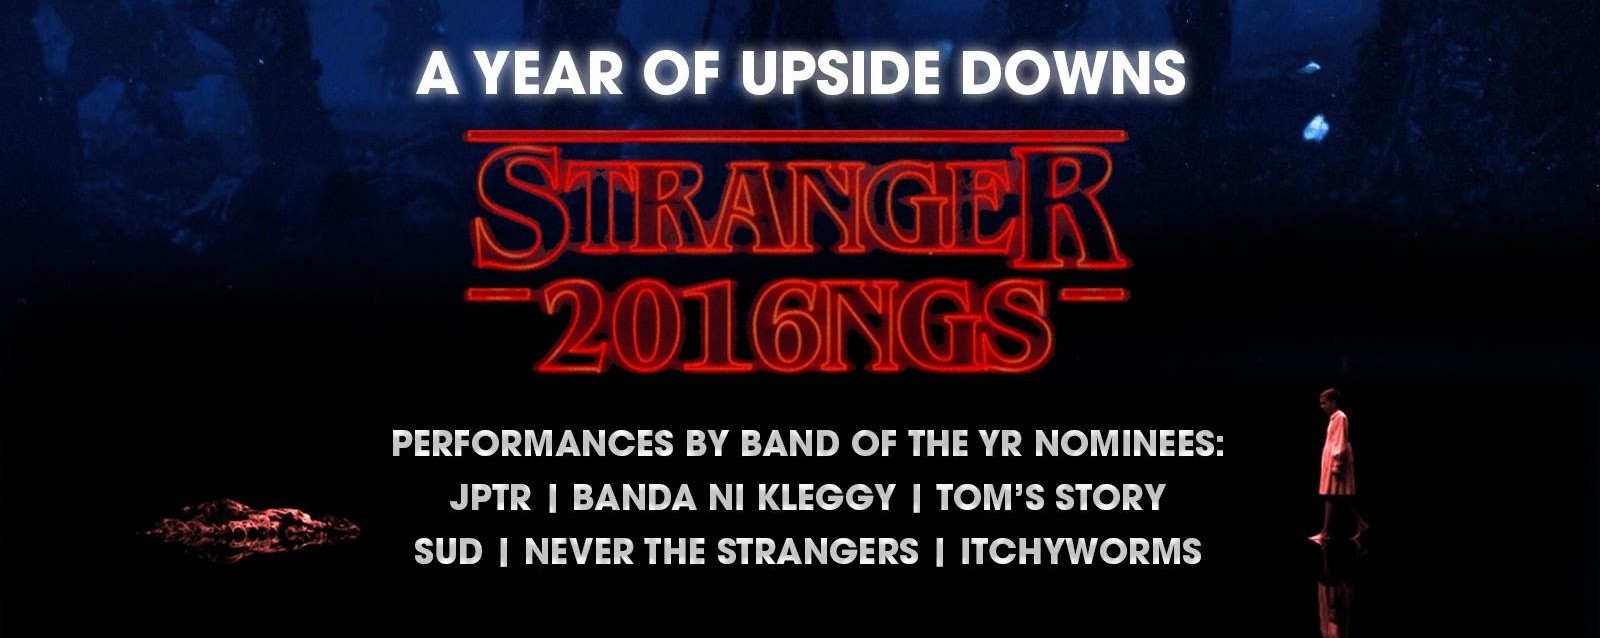 Stranger 2016ngs (Apags Awards Night 2016)